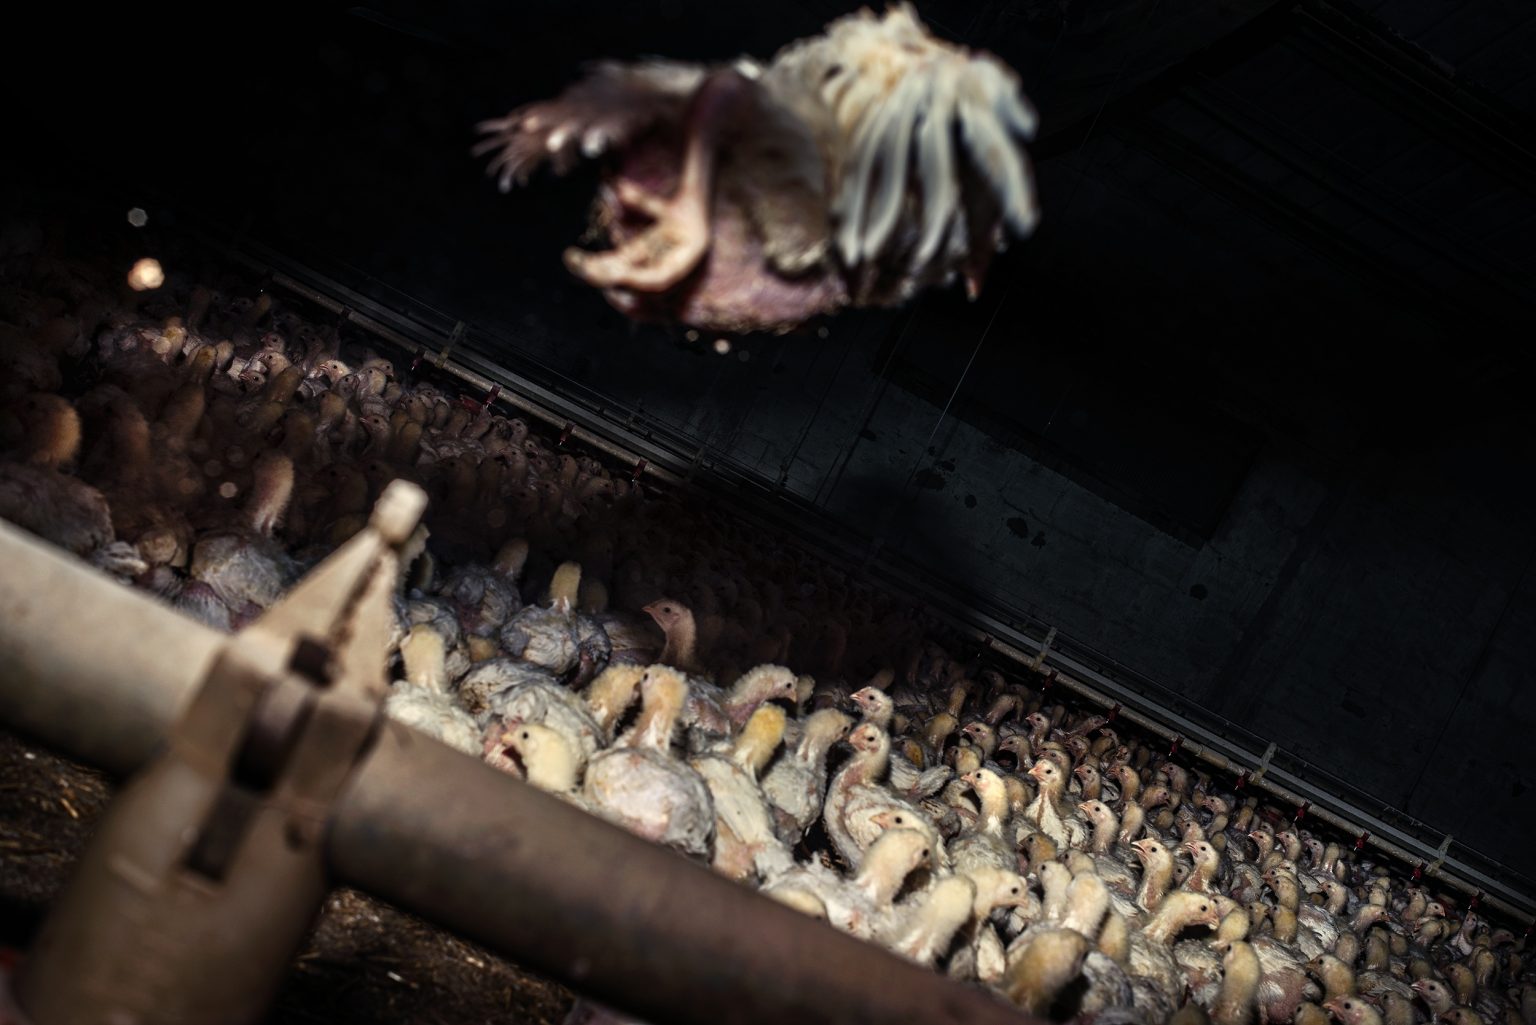 The interior of a fattening chicken farm. Emilia Romagna. May 2017.

L'interno di un allevamento di polli da ingrasso. Emilia Romagna. Gennaio 2018.